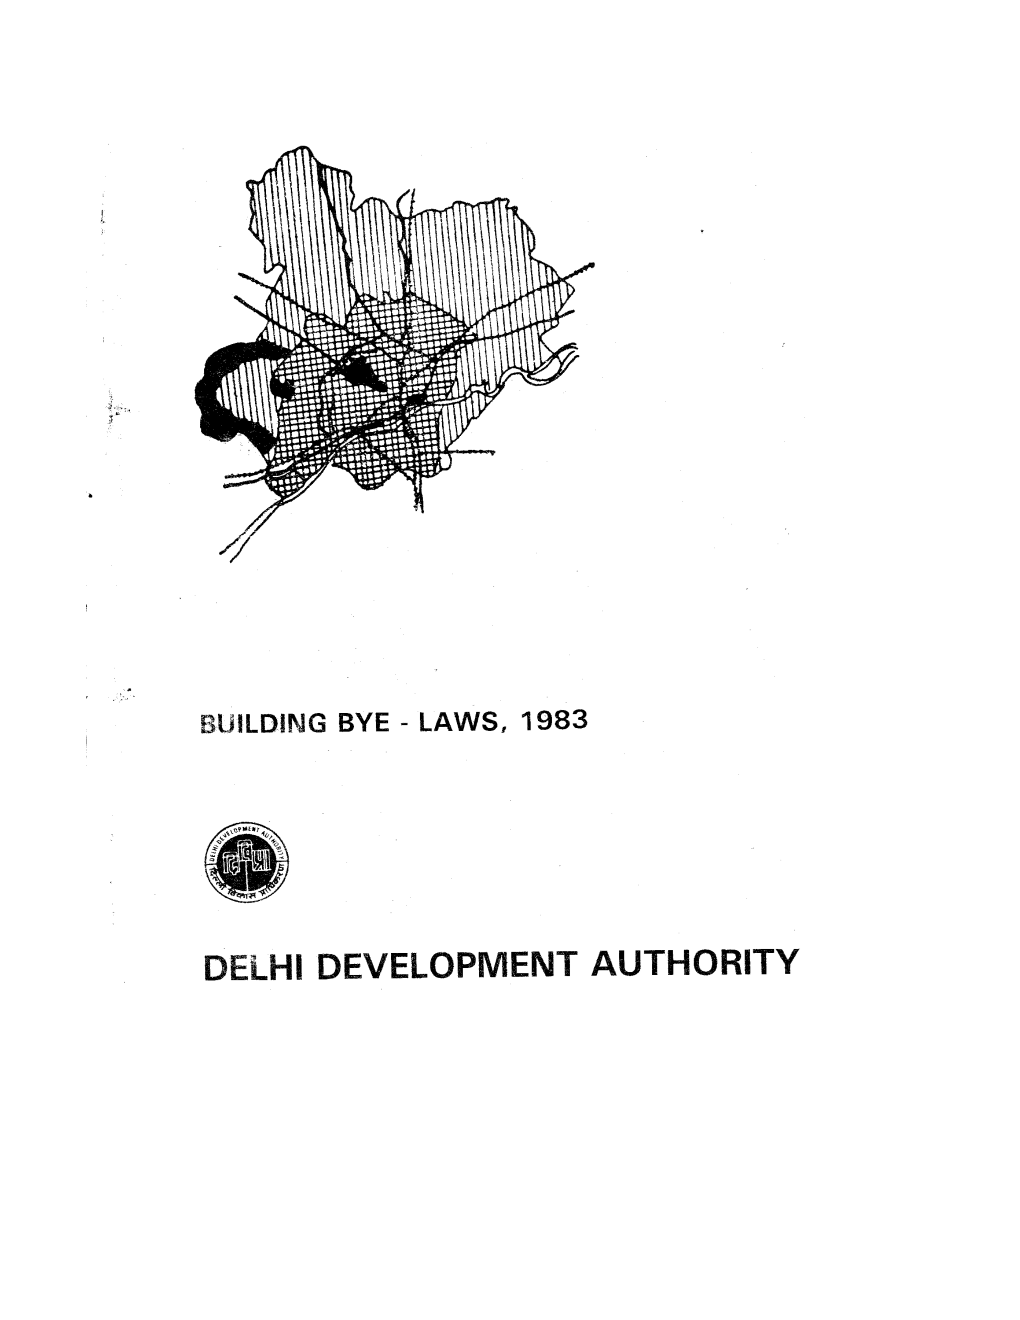 Delhi Development Authority s10